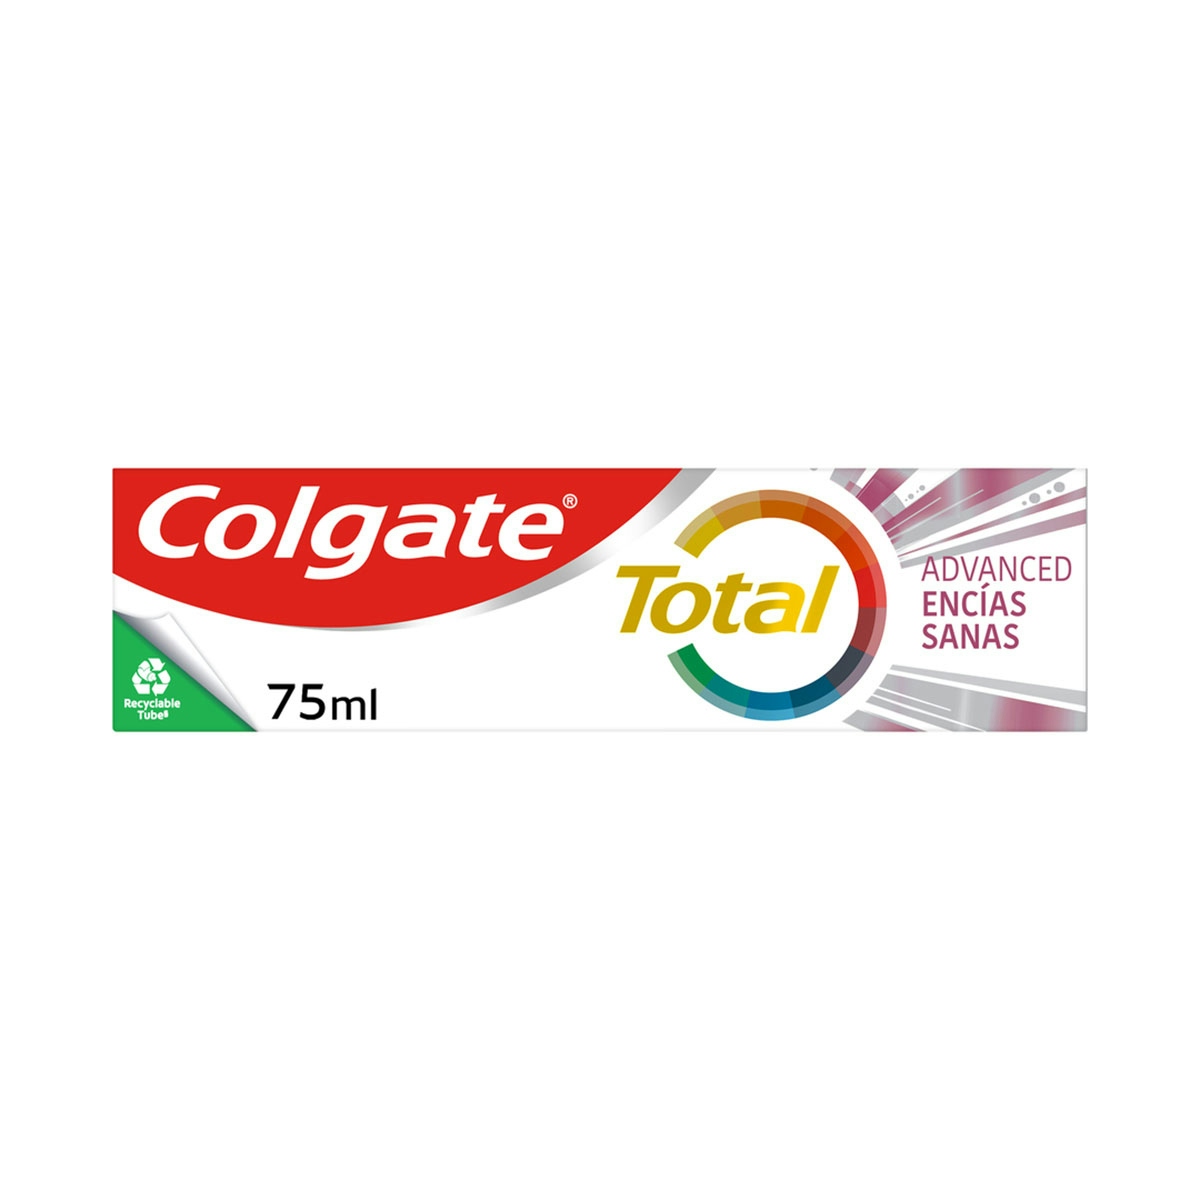 Pasta de dientes Colgate Total Advanced Encías Sanas 24h de protección completa 75ml